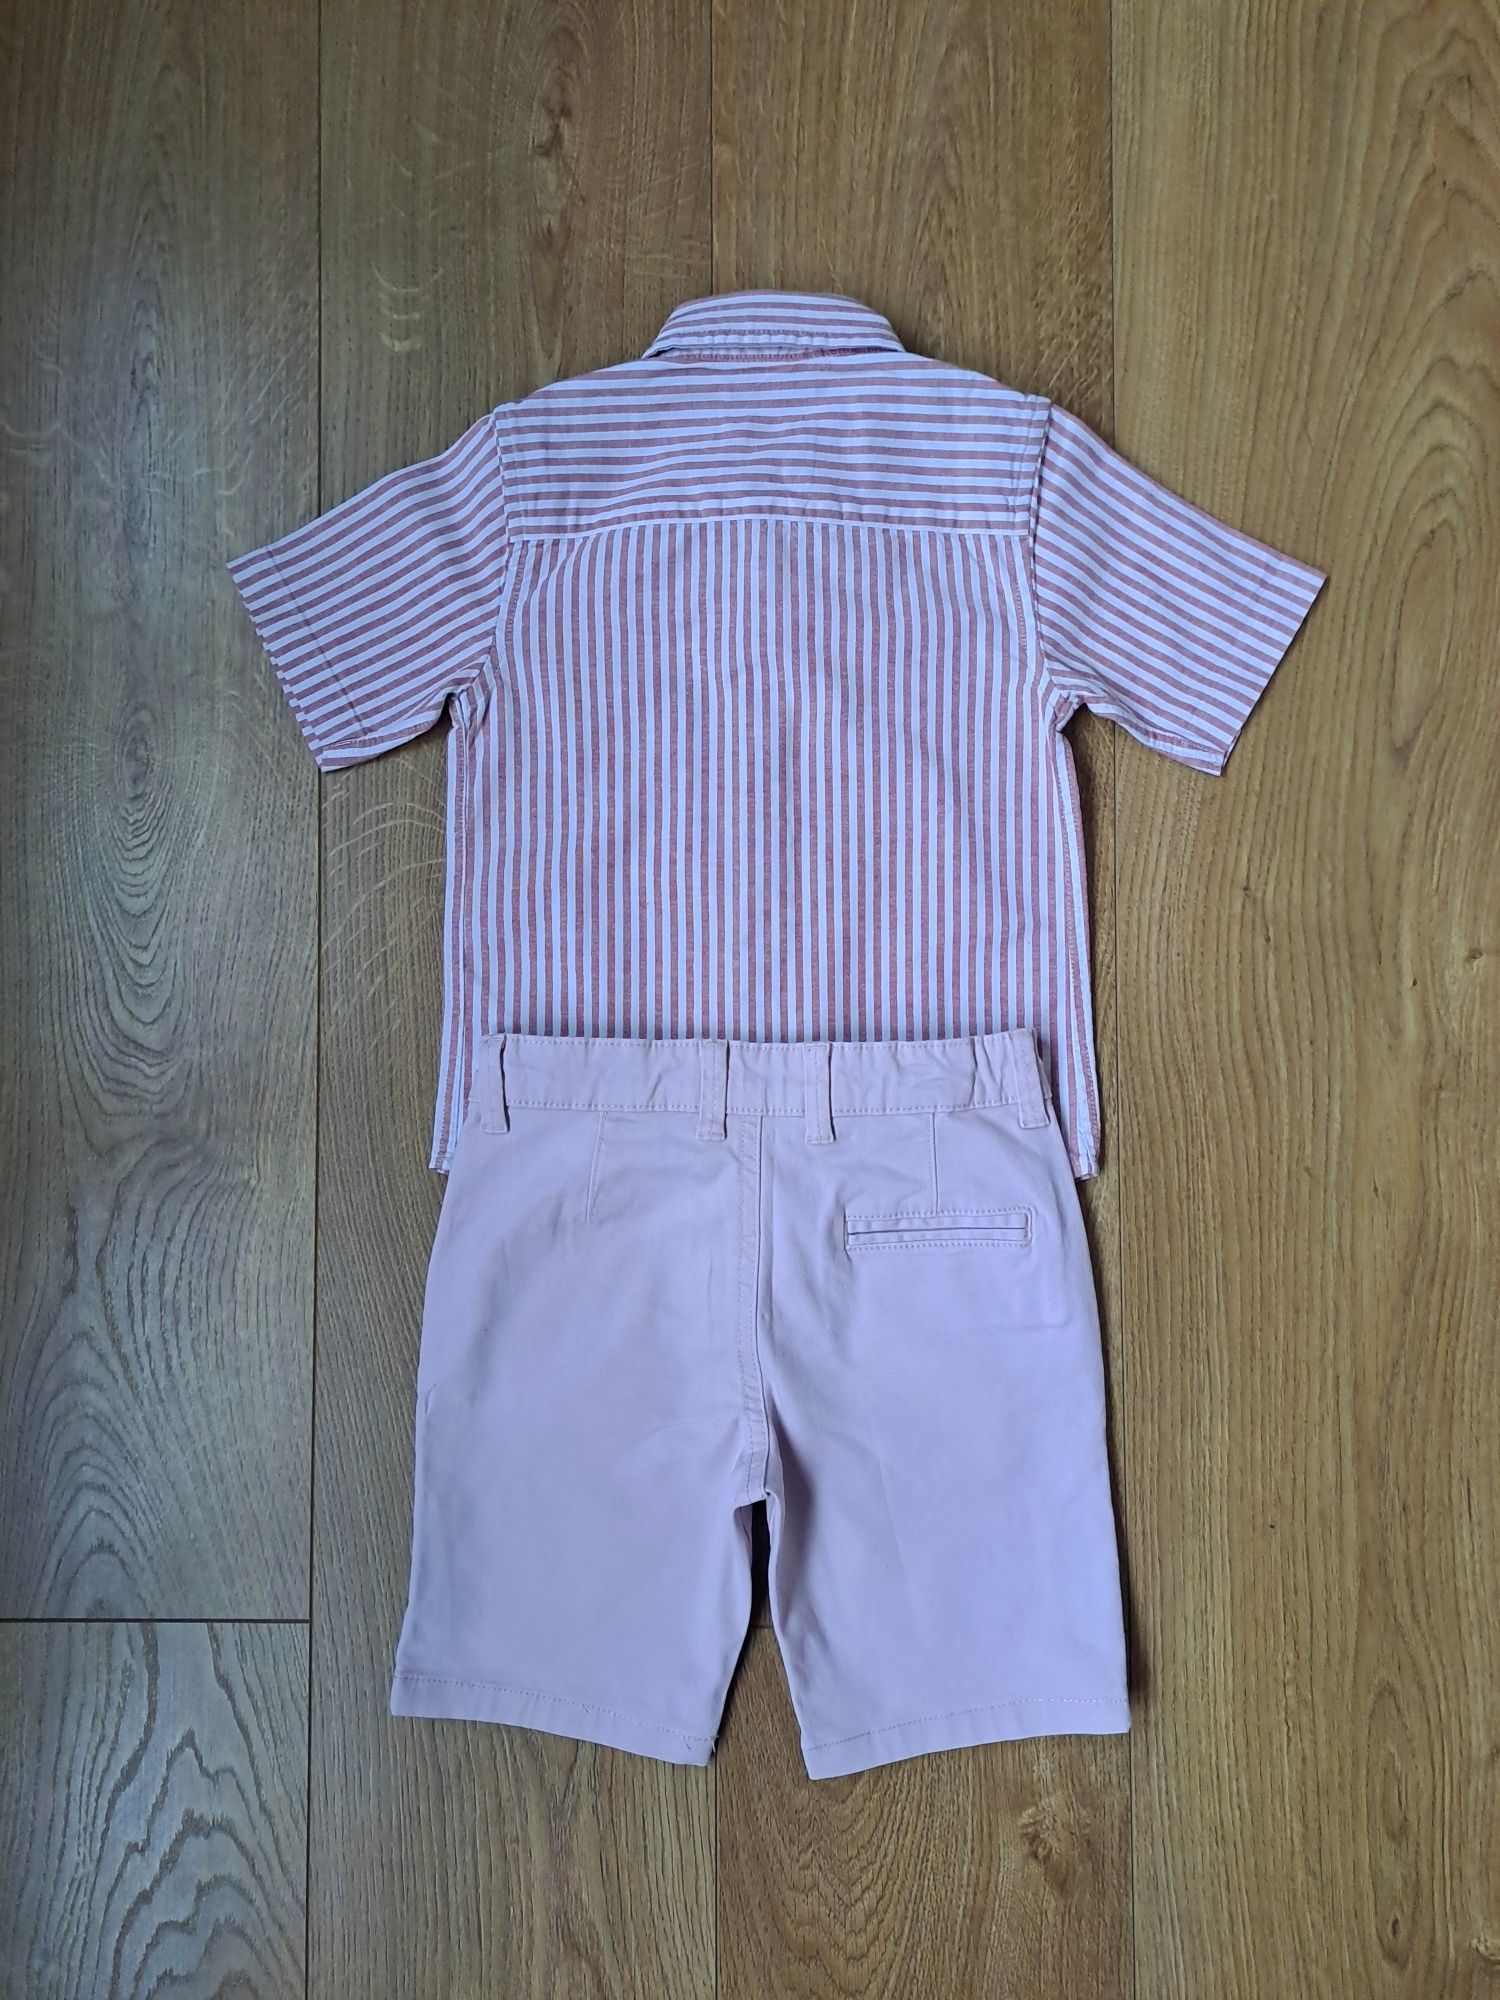 Нарядный набор для мальчика/нарядная рубашка/нарядные шорты